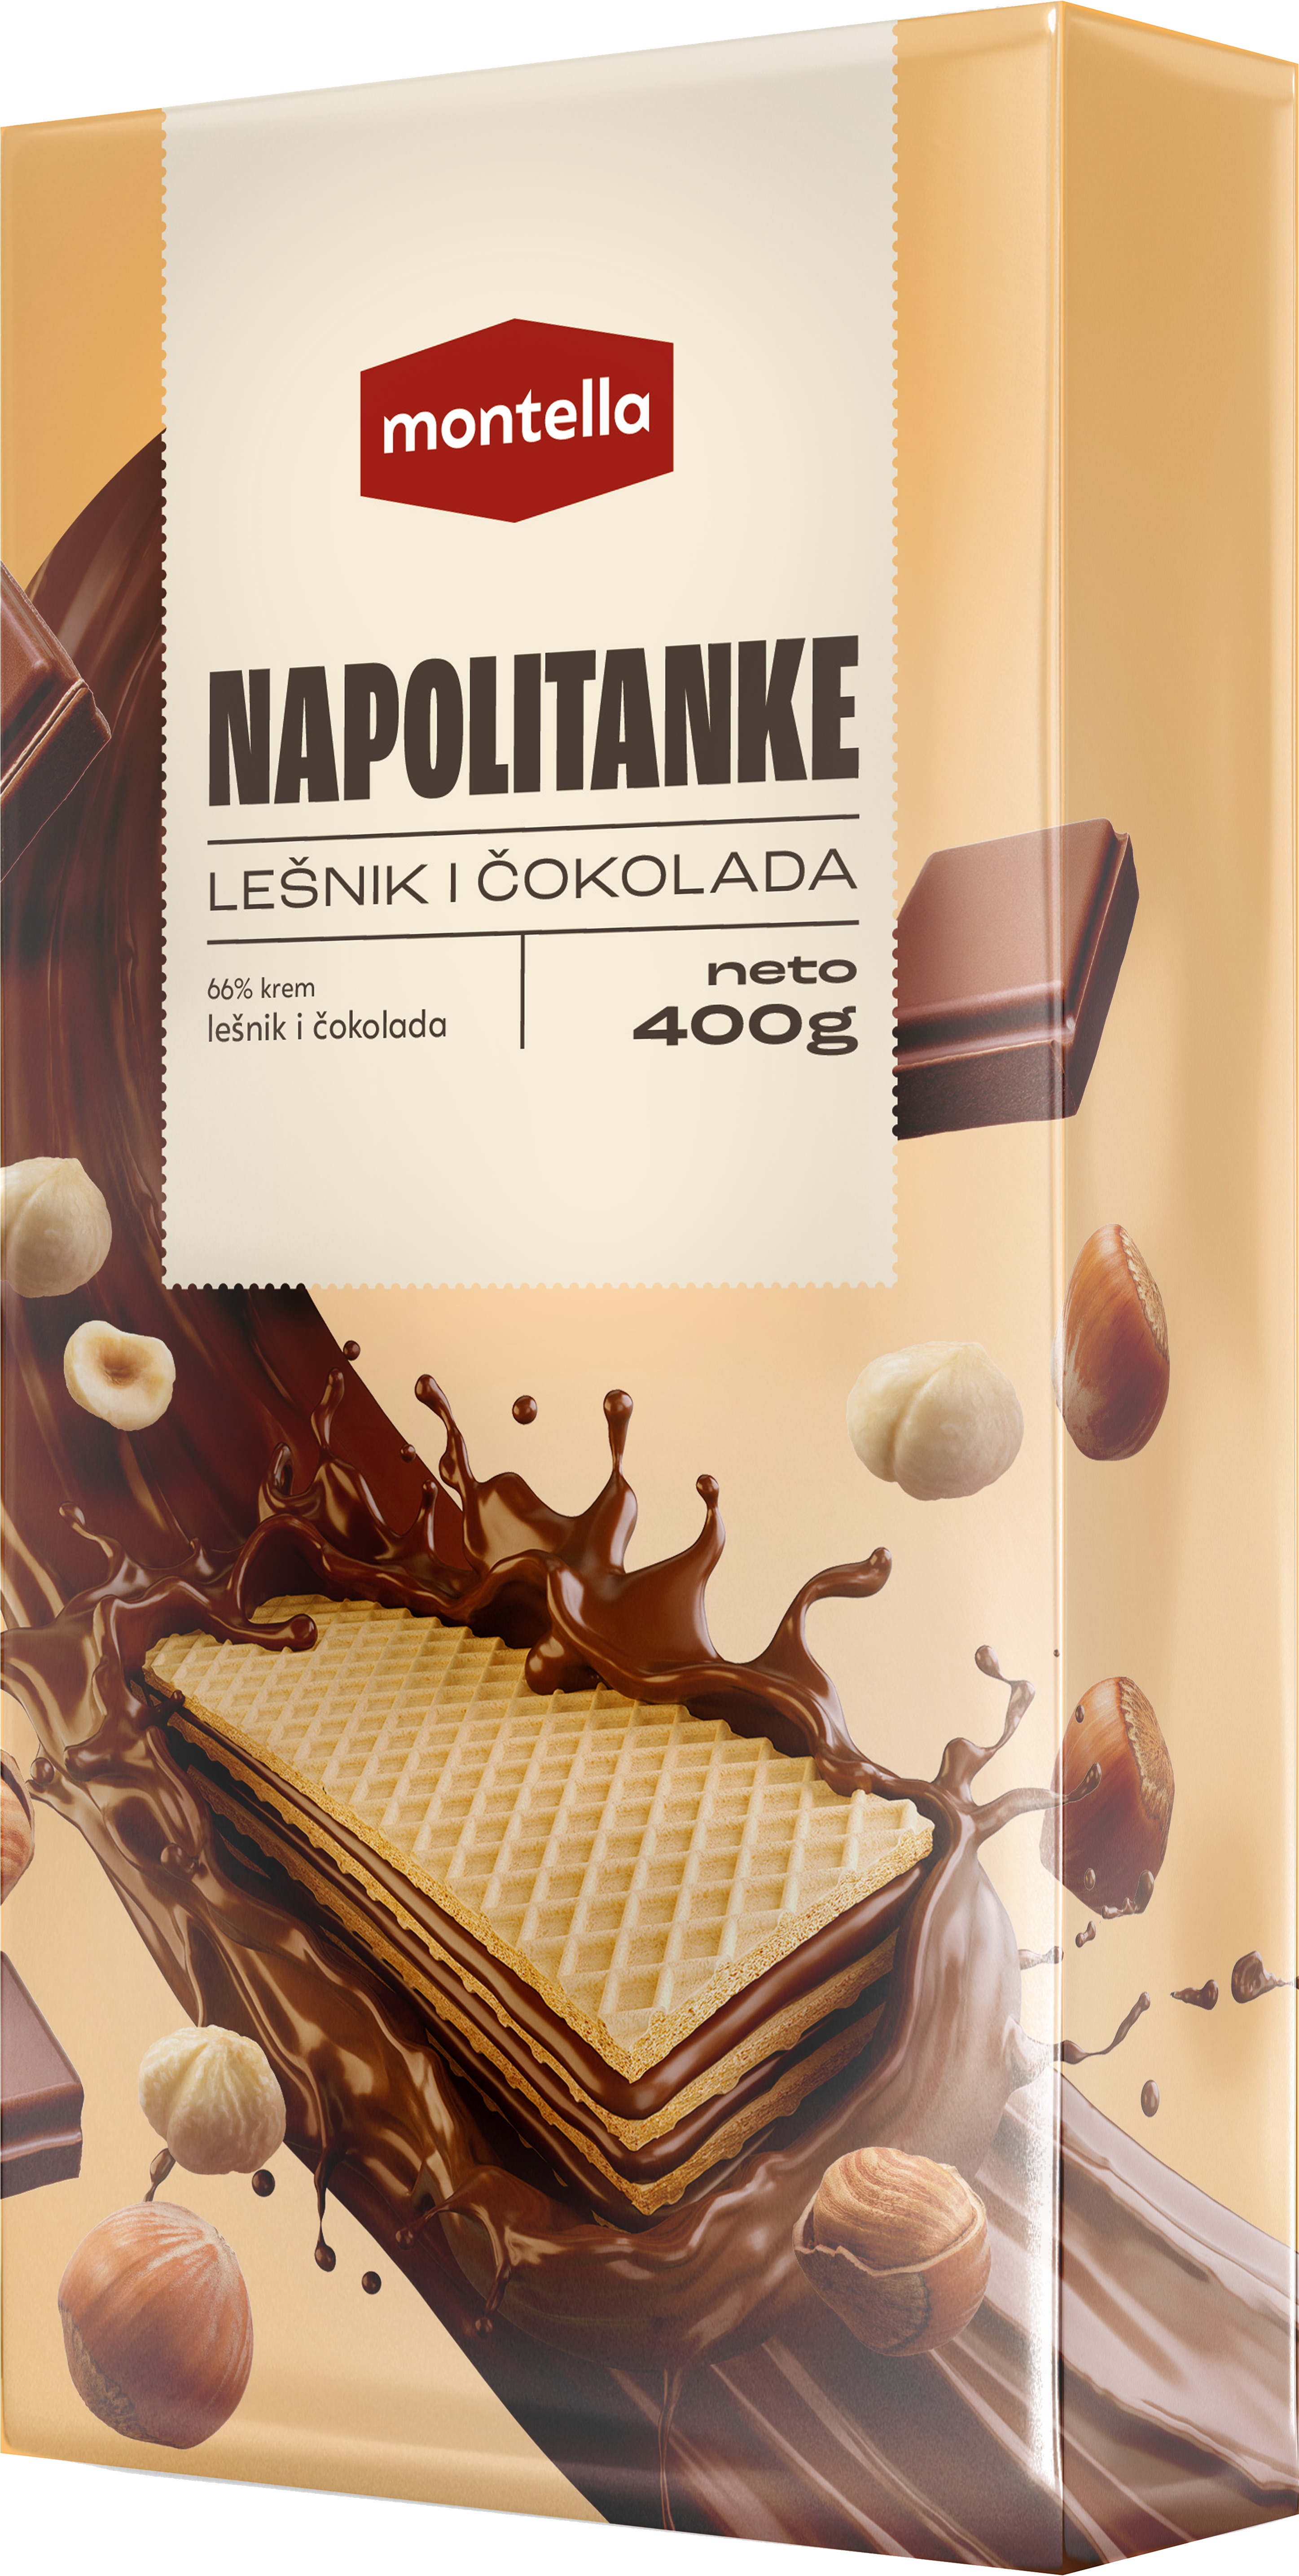 Slika za Napolitanka Montella lješnik i čokolada 400g